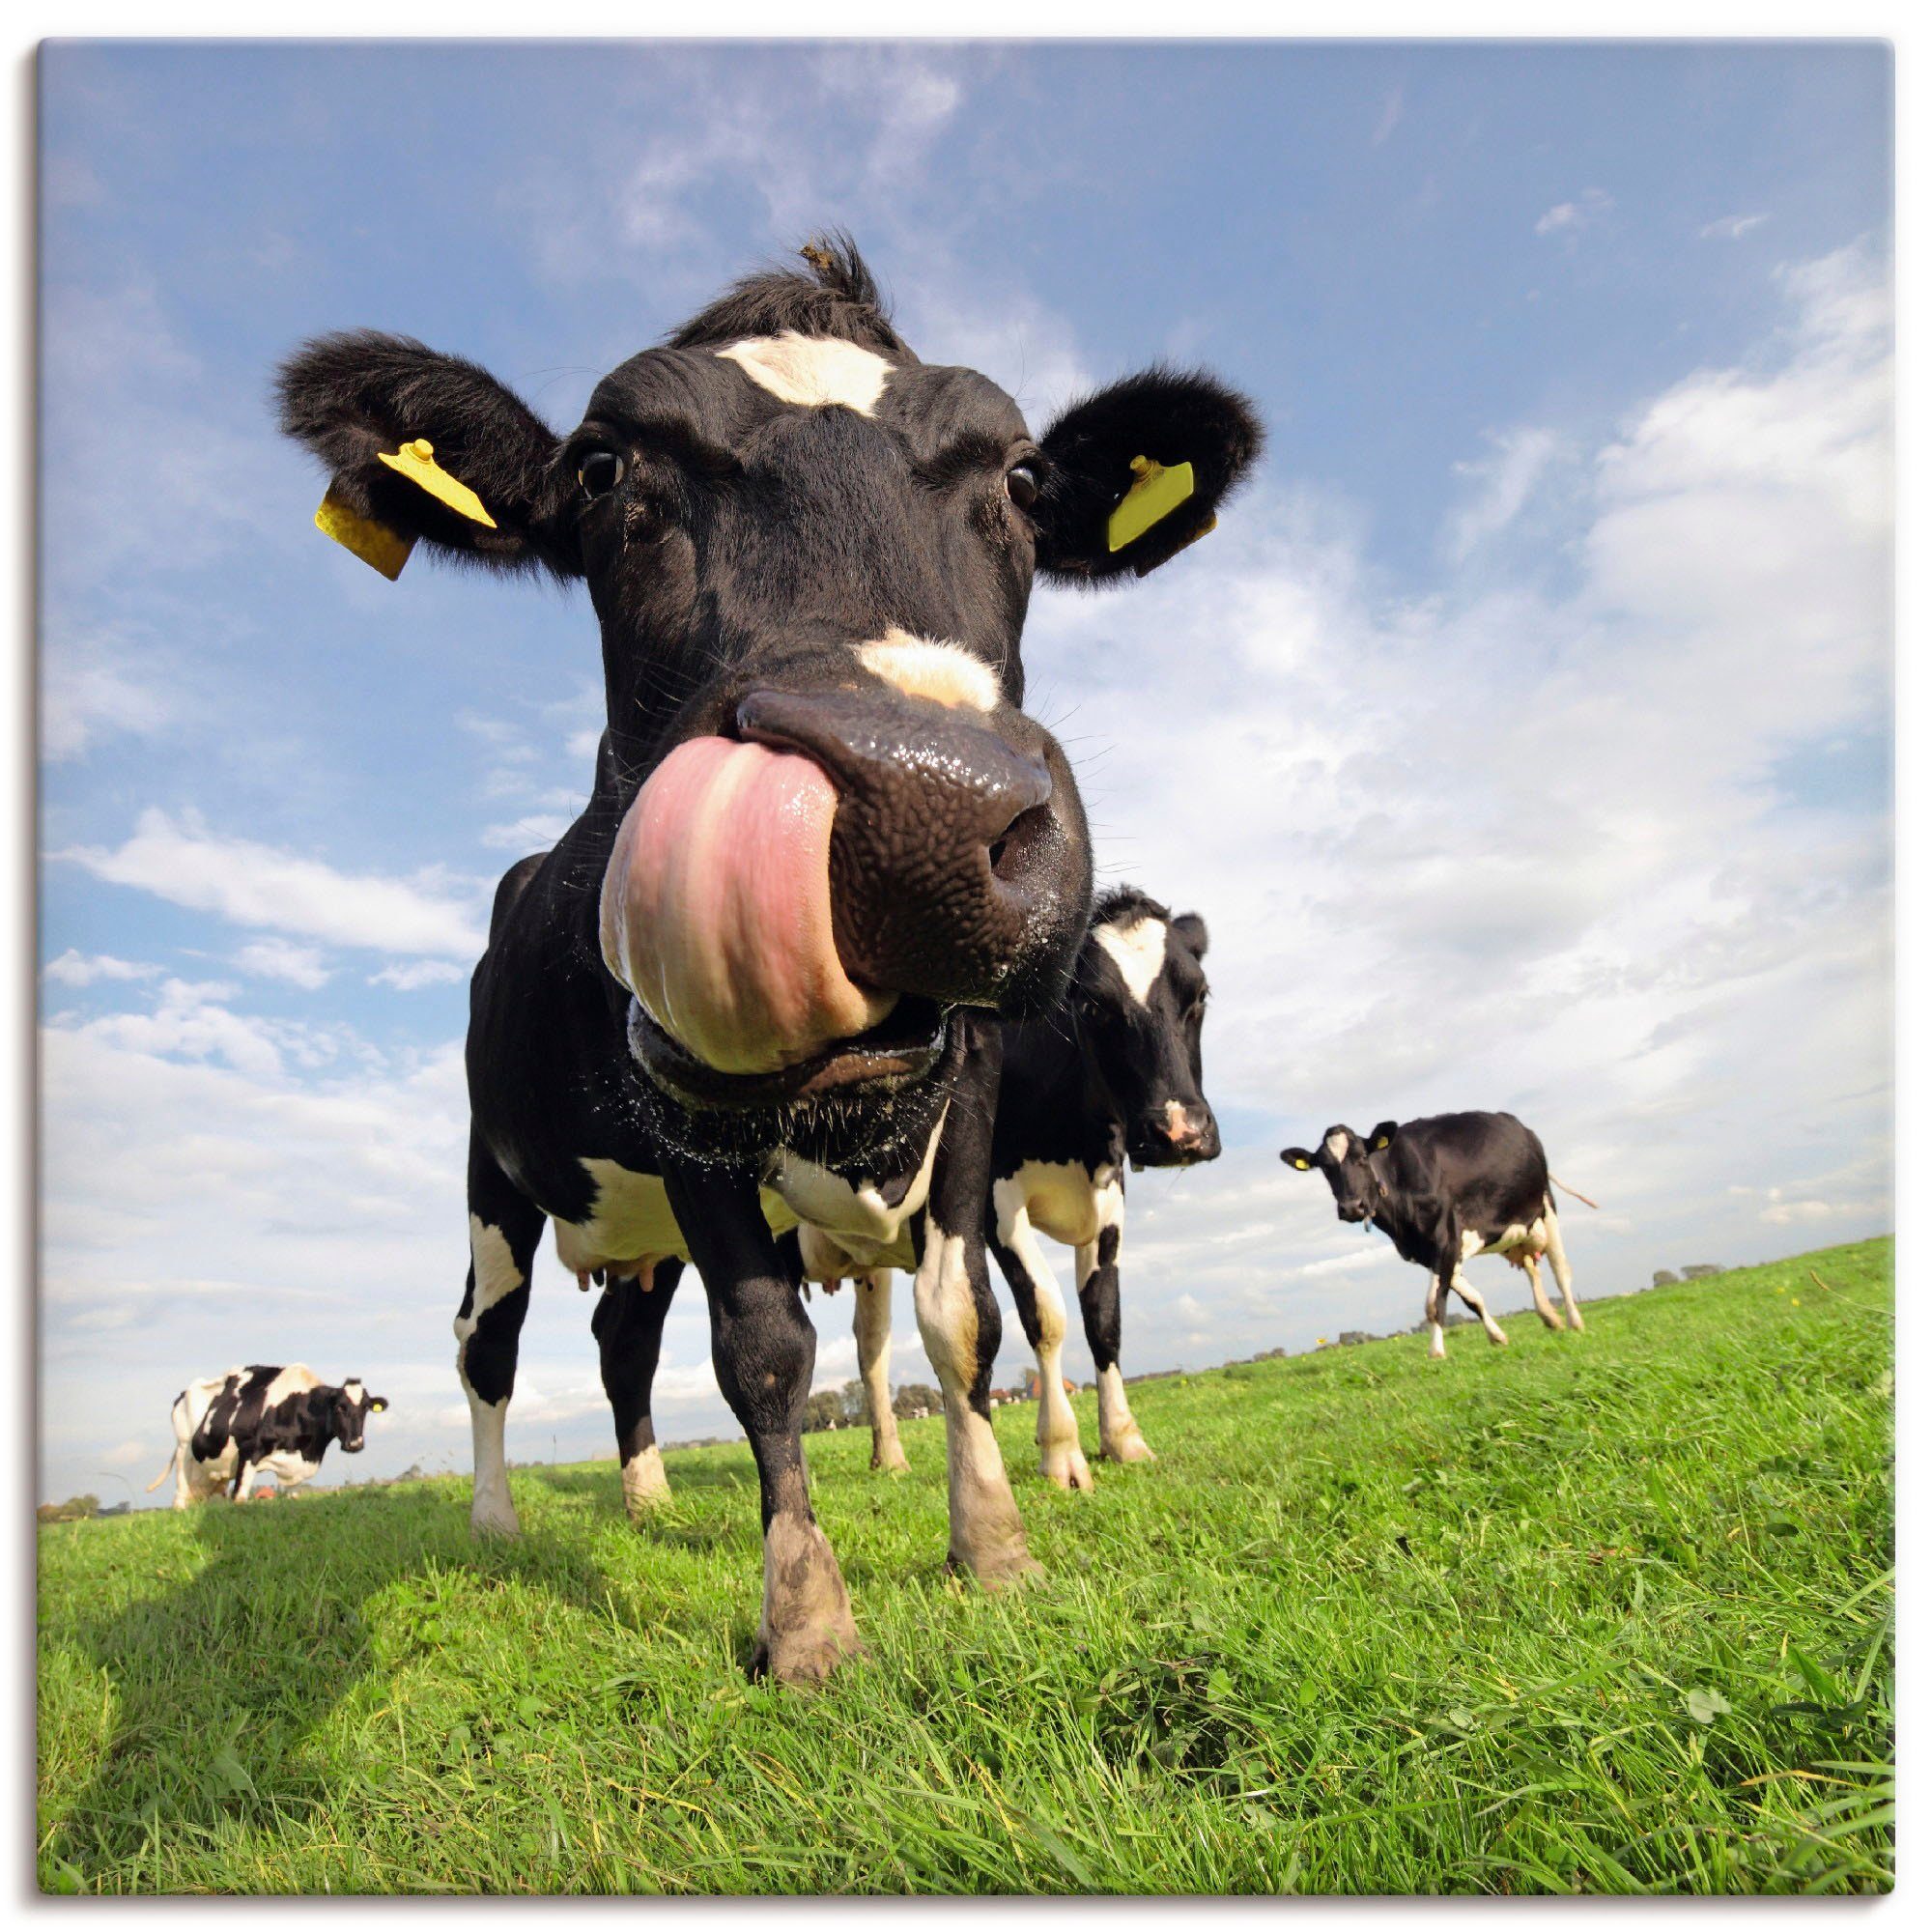 Artland Artprint Holstein-koe met enorme tong in vele afmetingen & productsoorten - artprint van aluminium / artprint voor buiten, artprint op linnen, poster, muursticker / wandfol